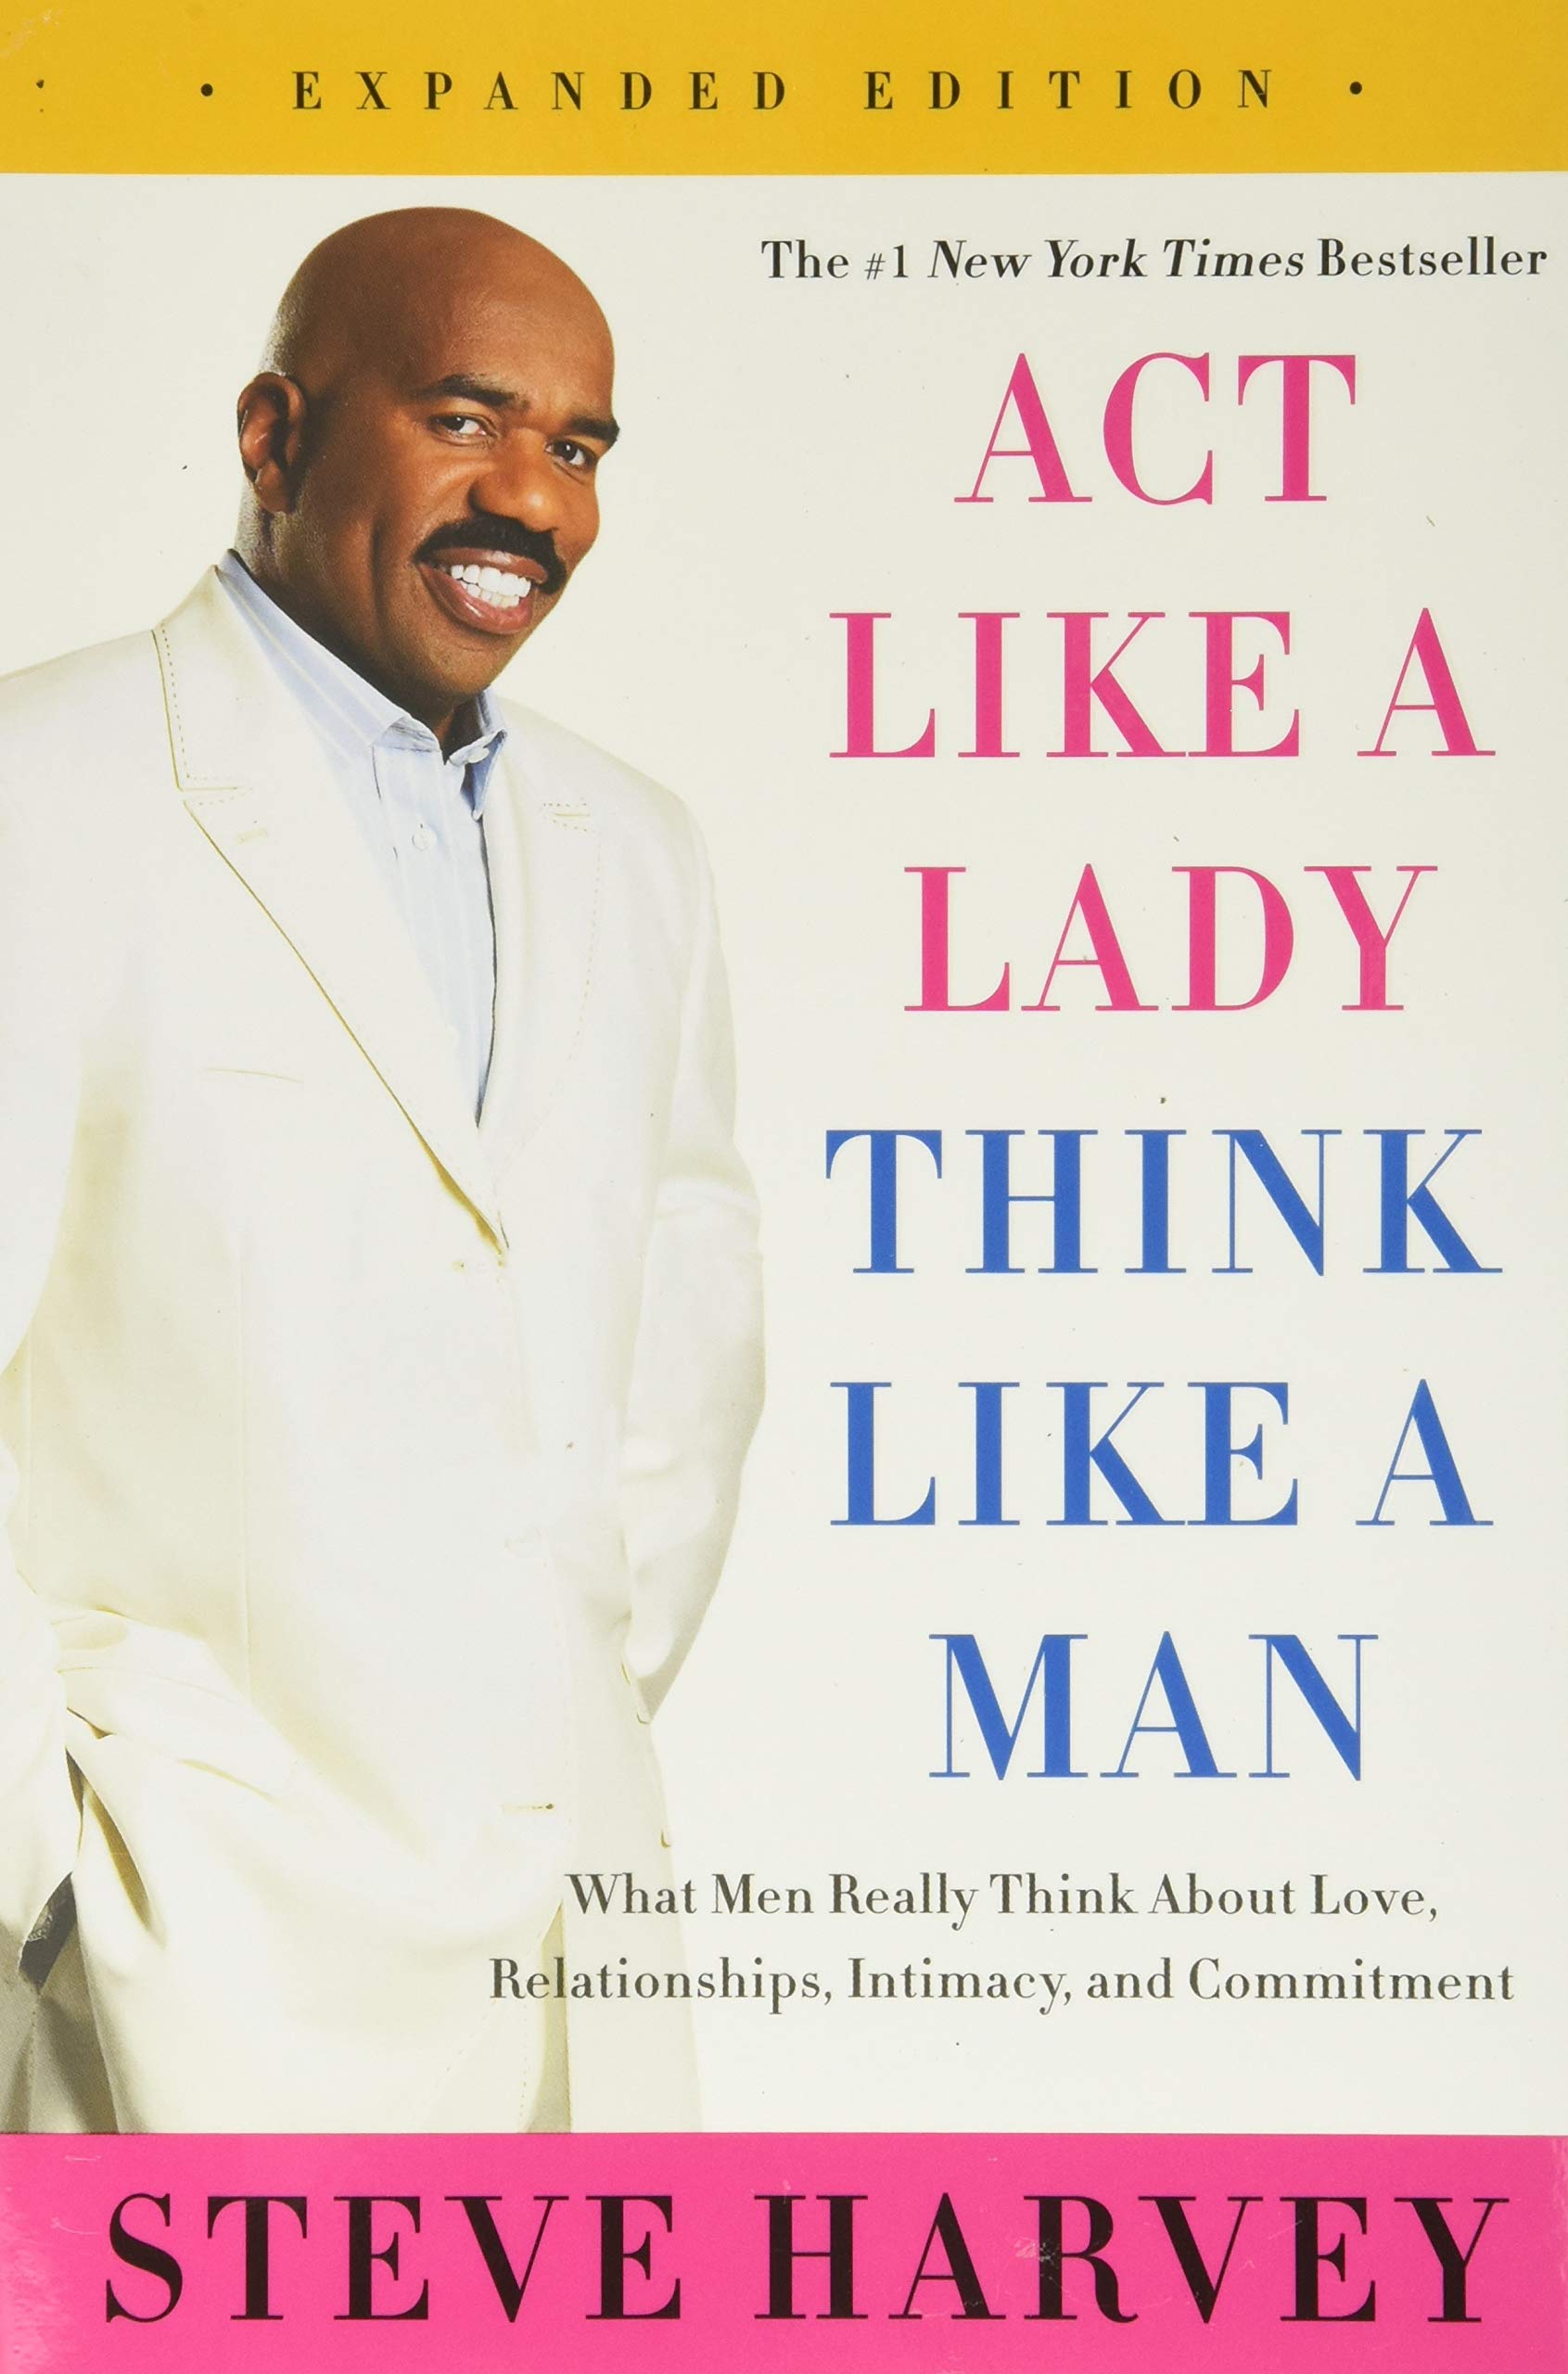 کتاب Act Like A Lady Think Like A Man کتاب انگلیسی مانند یک زن رفتار کن، مانند یک مرد بیاندیش اثر استیو هاروی Steve Harvey از فروشگاه کتاب سارانگ